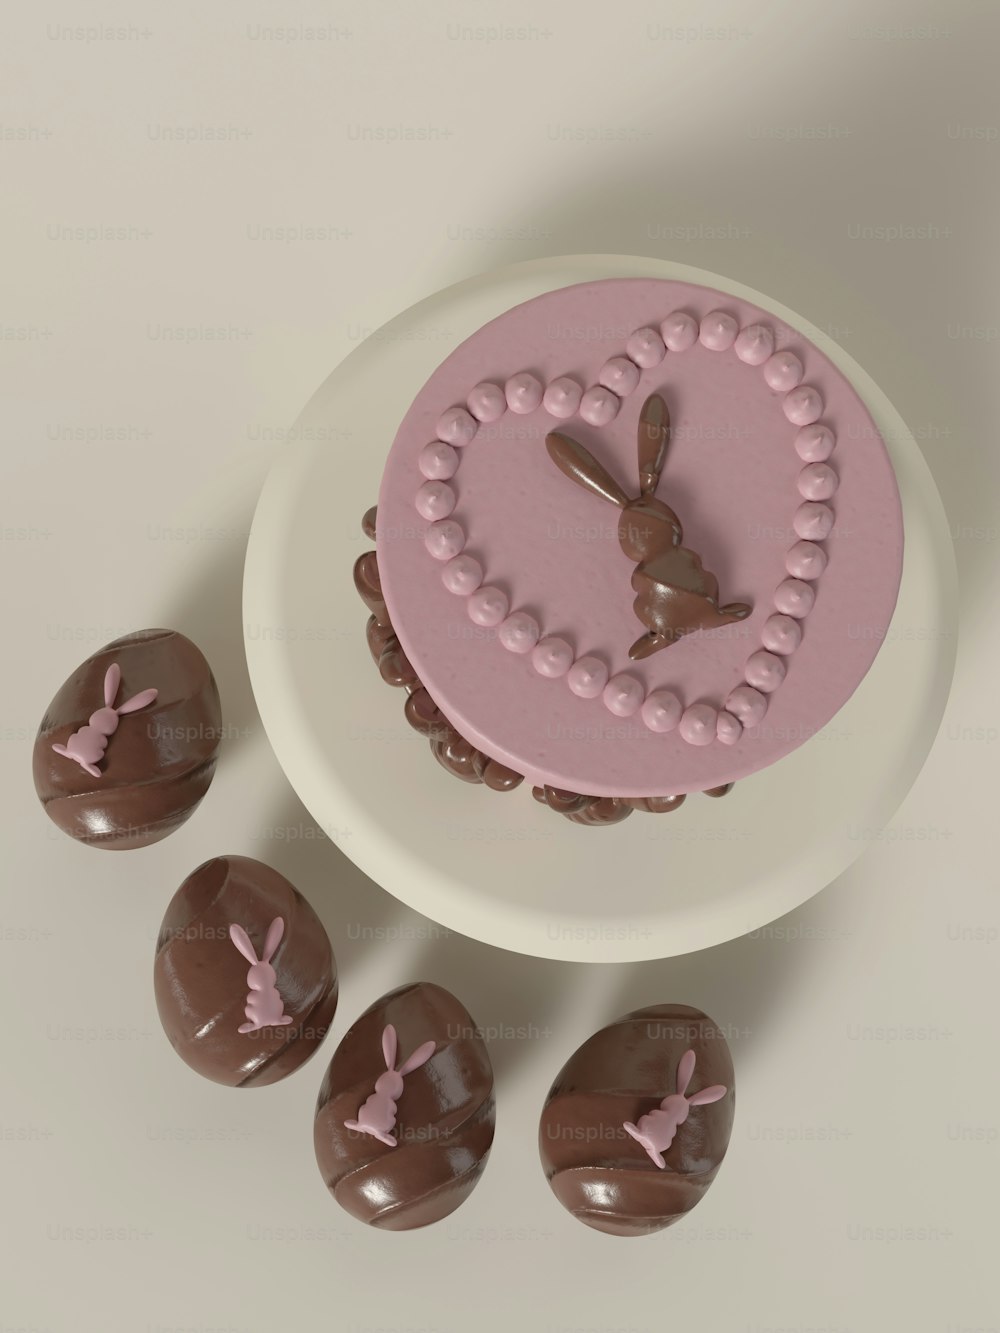 チョコレート菓子を前にしたピンクのケーキ